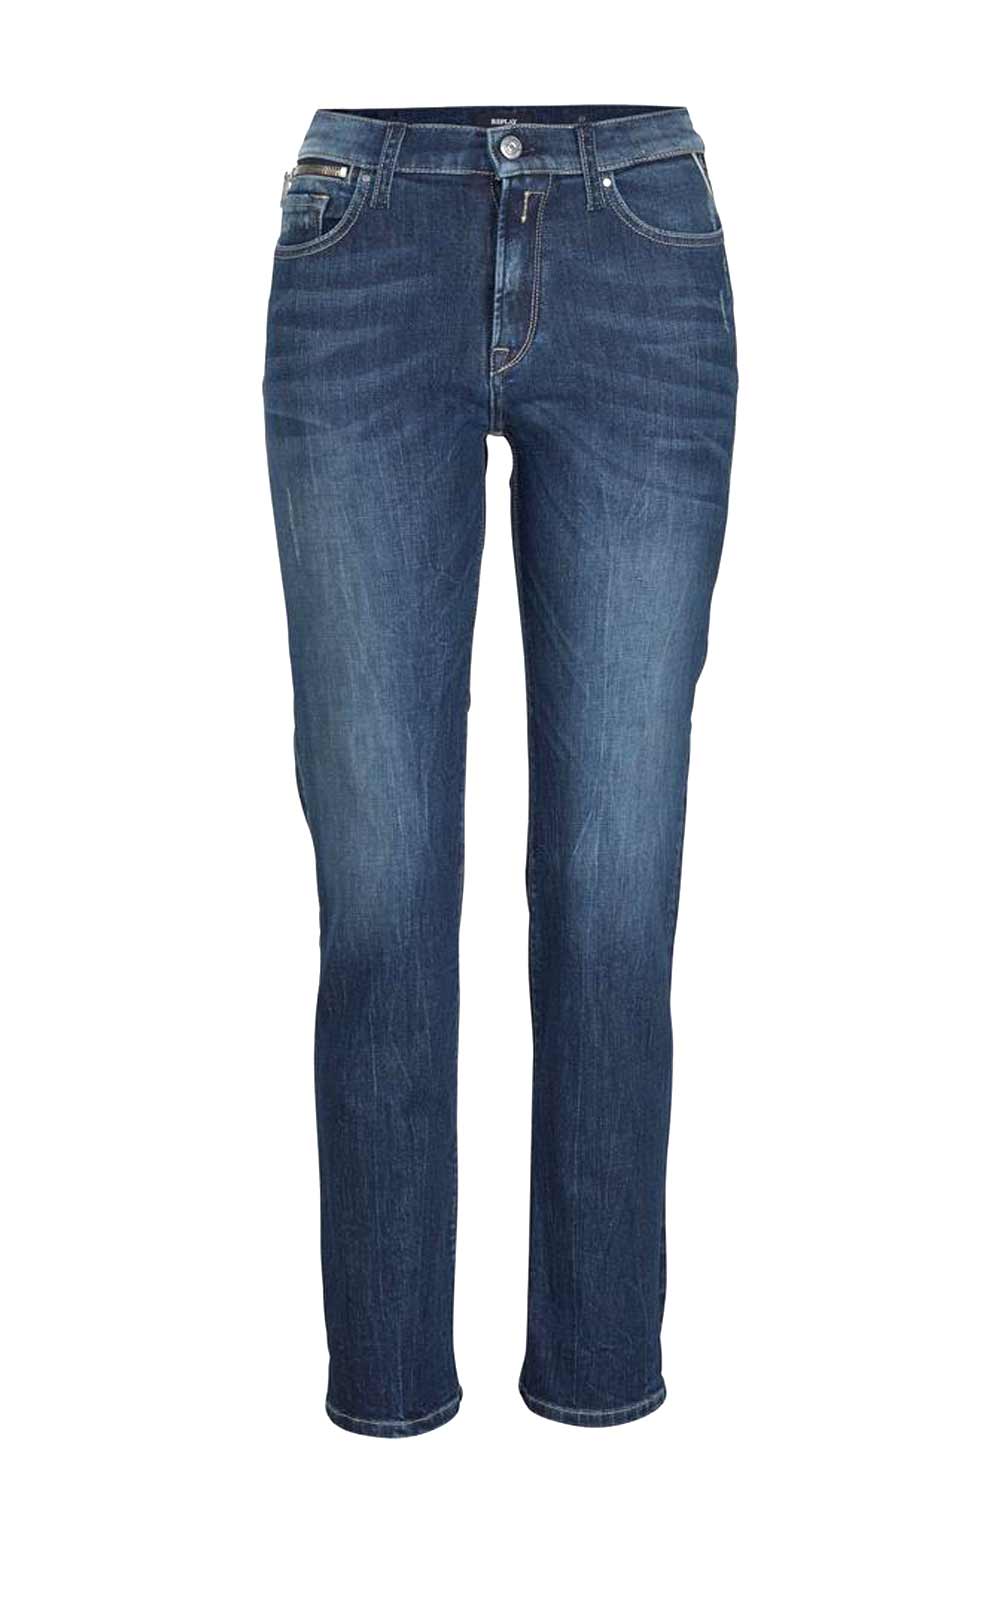 Replay Damen Marken-Jeans "JODEY", dark indigo, 32 inch